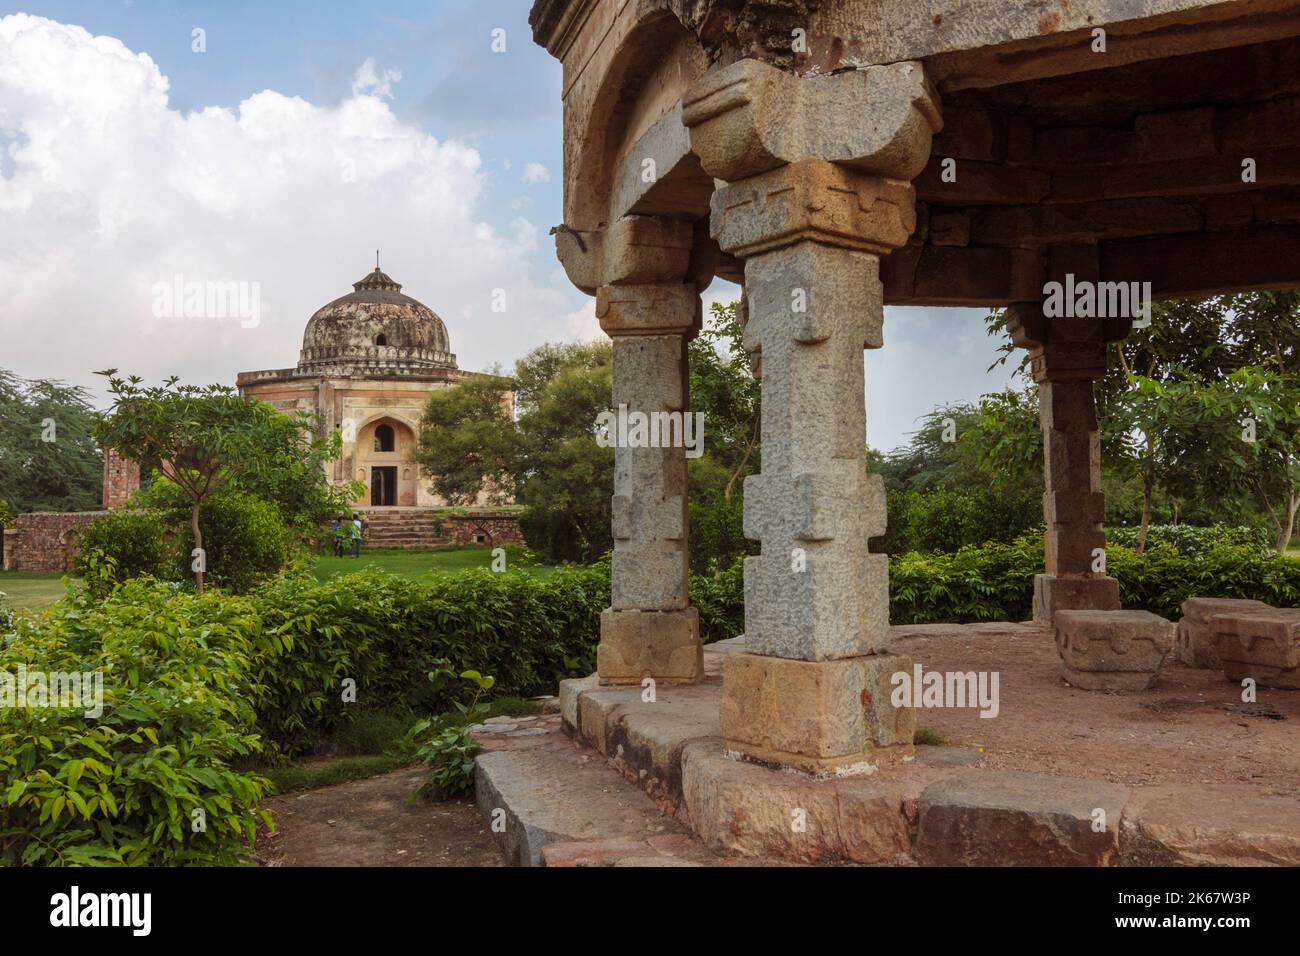 Dehli, Indien : Grab des Quli Khan aus dem 16.. Jahrhundert im Archäologischen Park Mehrauli. Das achteckige Grab wurde dann als Metcalfe House, A, umgebaut Stockfoto